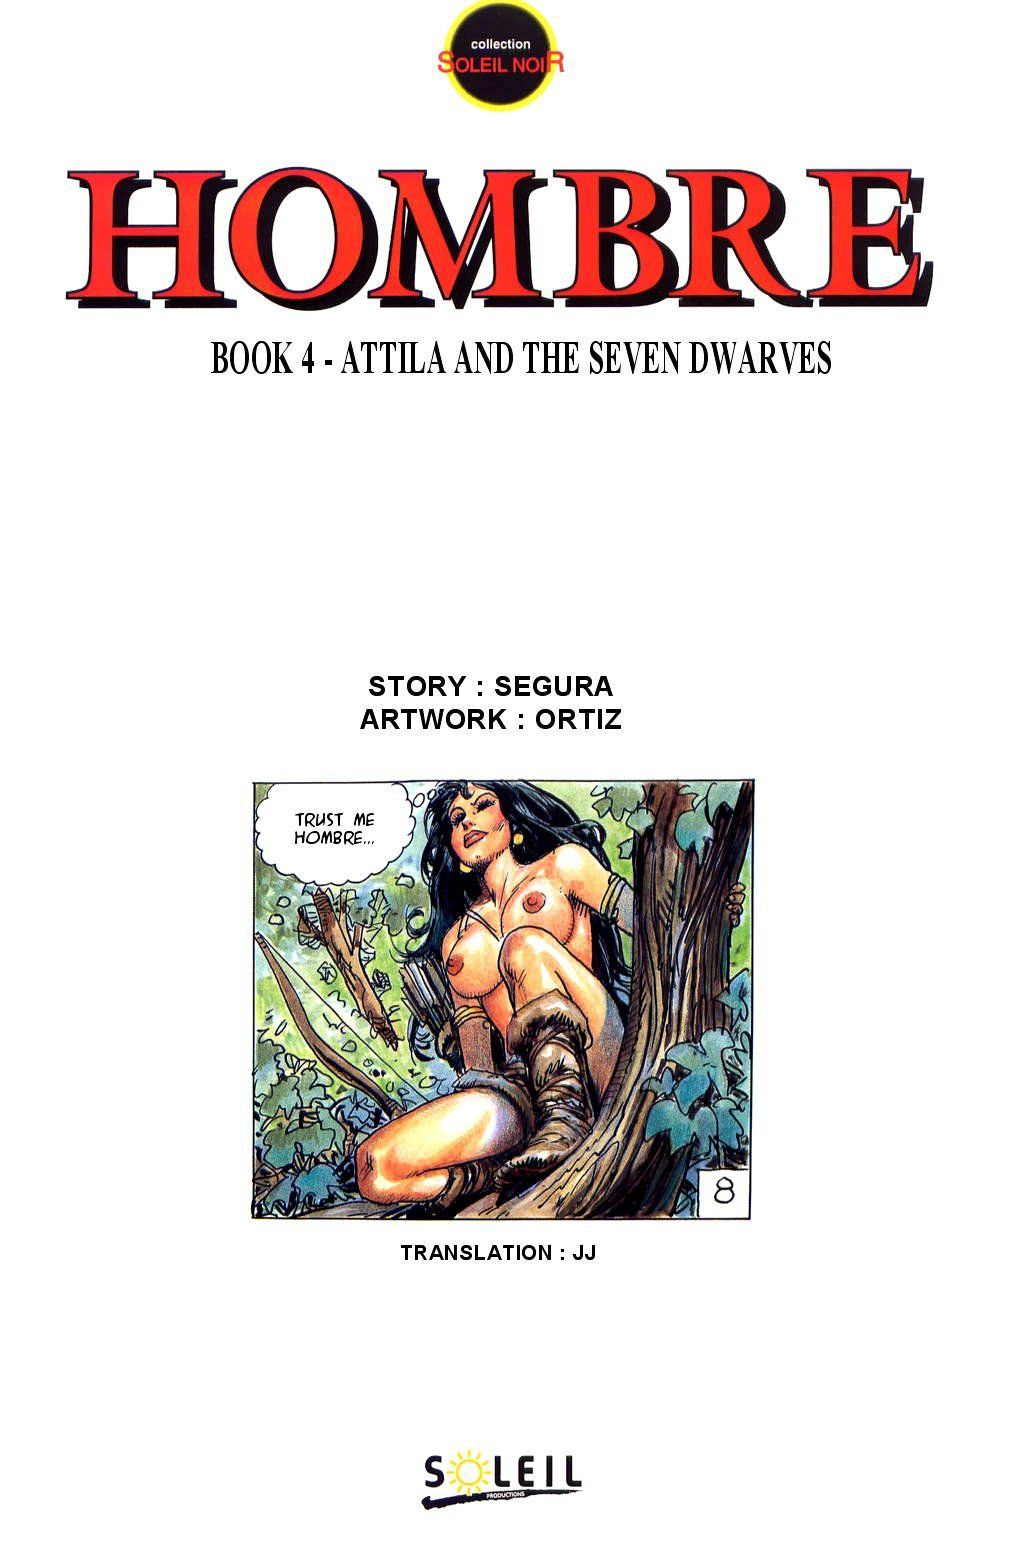 Antonio Segura - Hombre - Attila and the Seven Dwarves